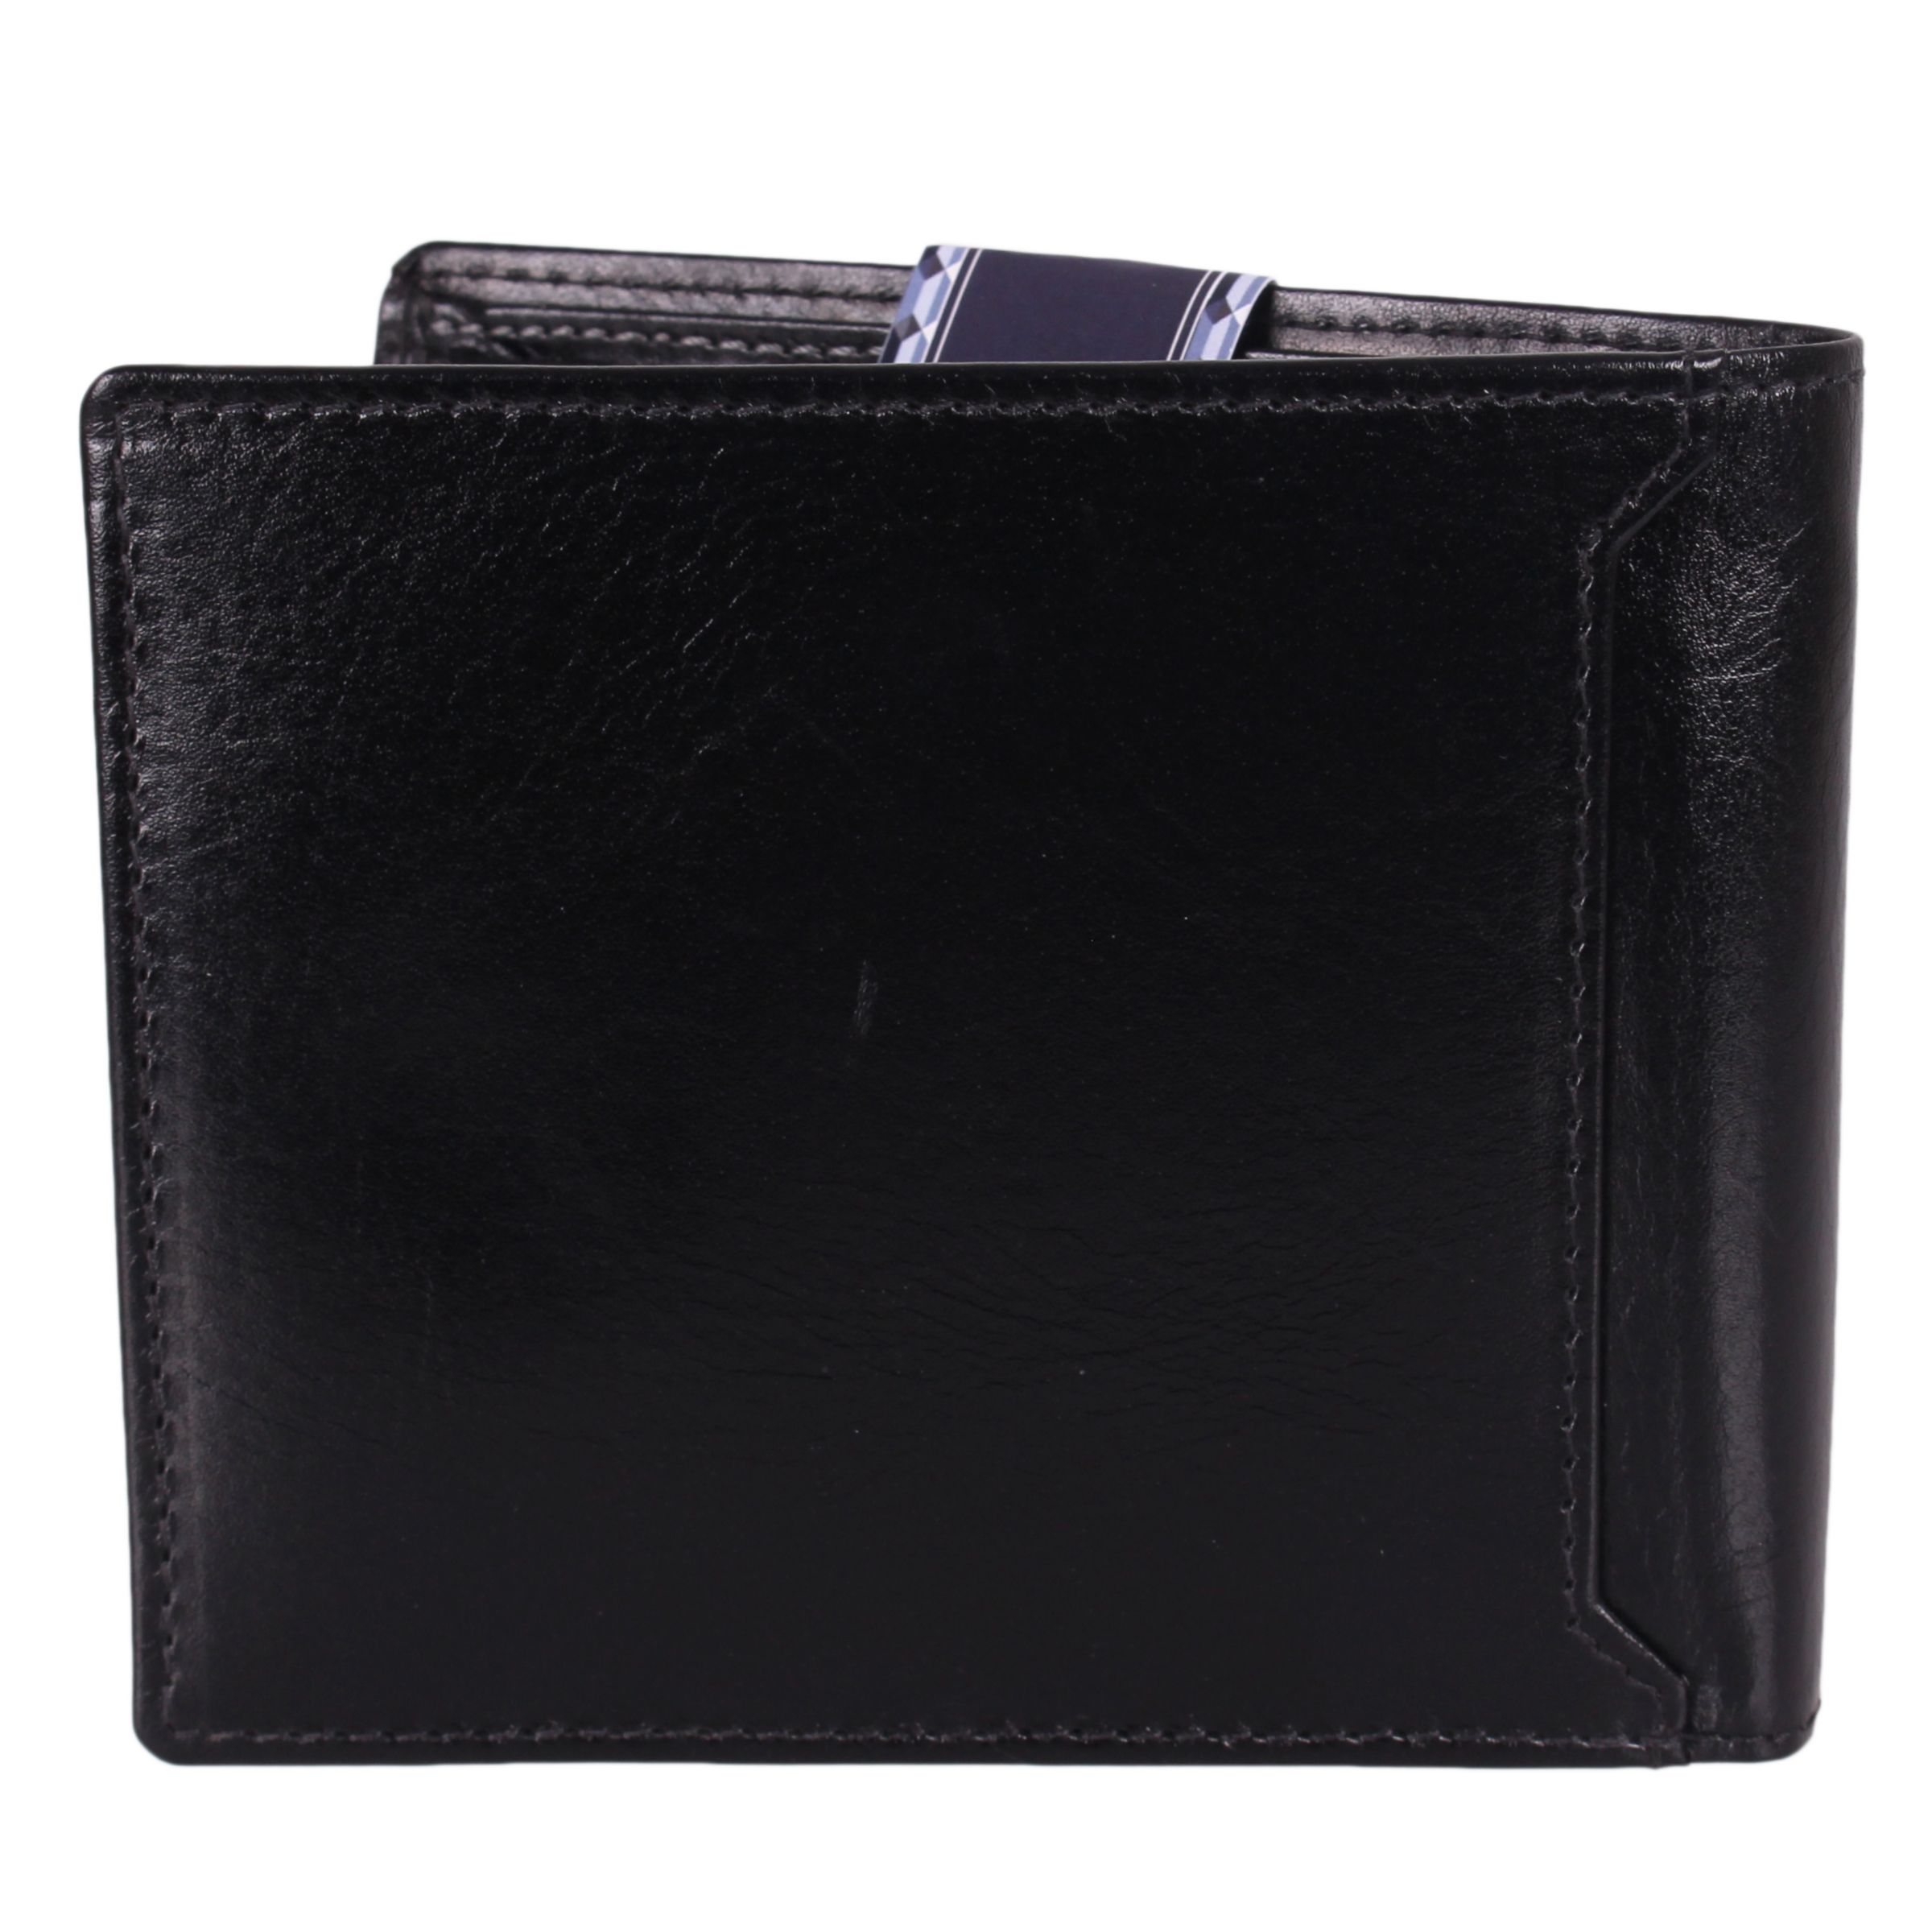 John Lewis & Partners RFID Blocking Leather Bifold Card Wallet, Black ...